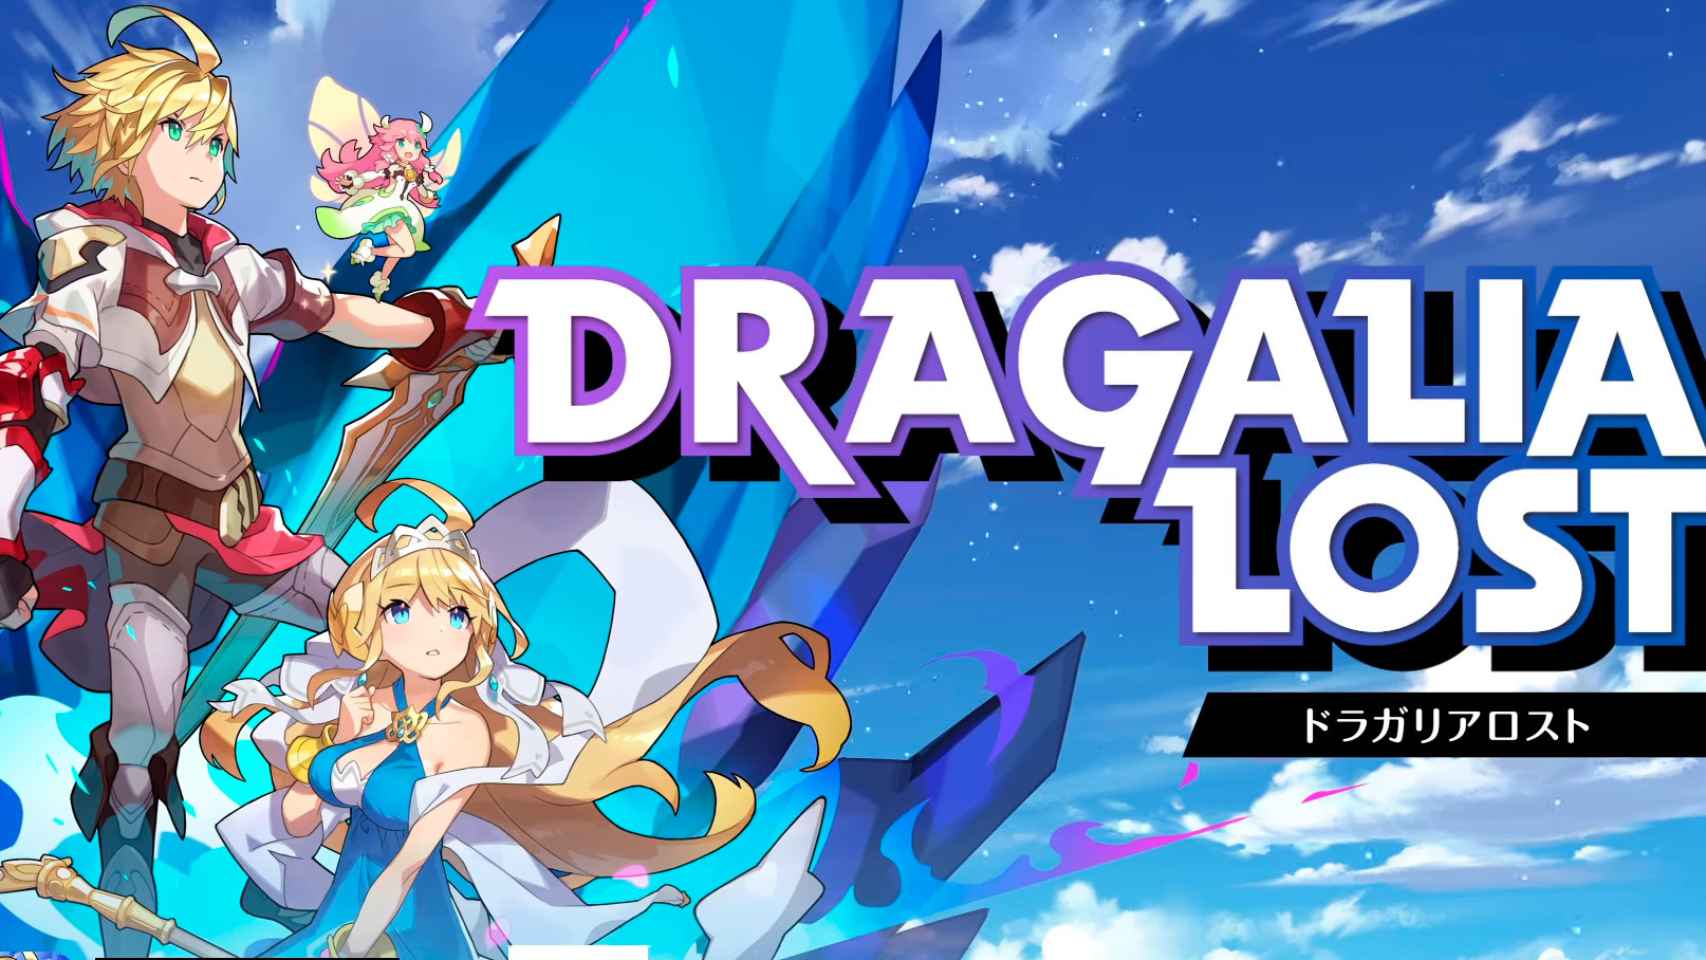 Nintendo prepara un nuevo juego para Android: Dragalia Lost